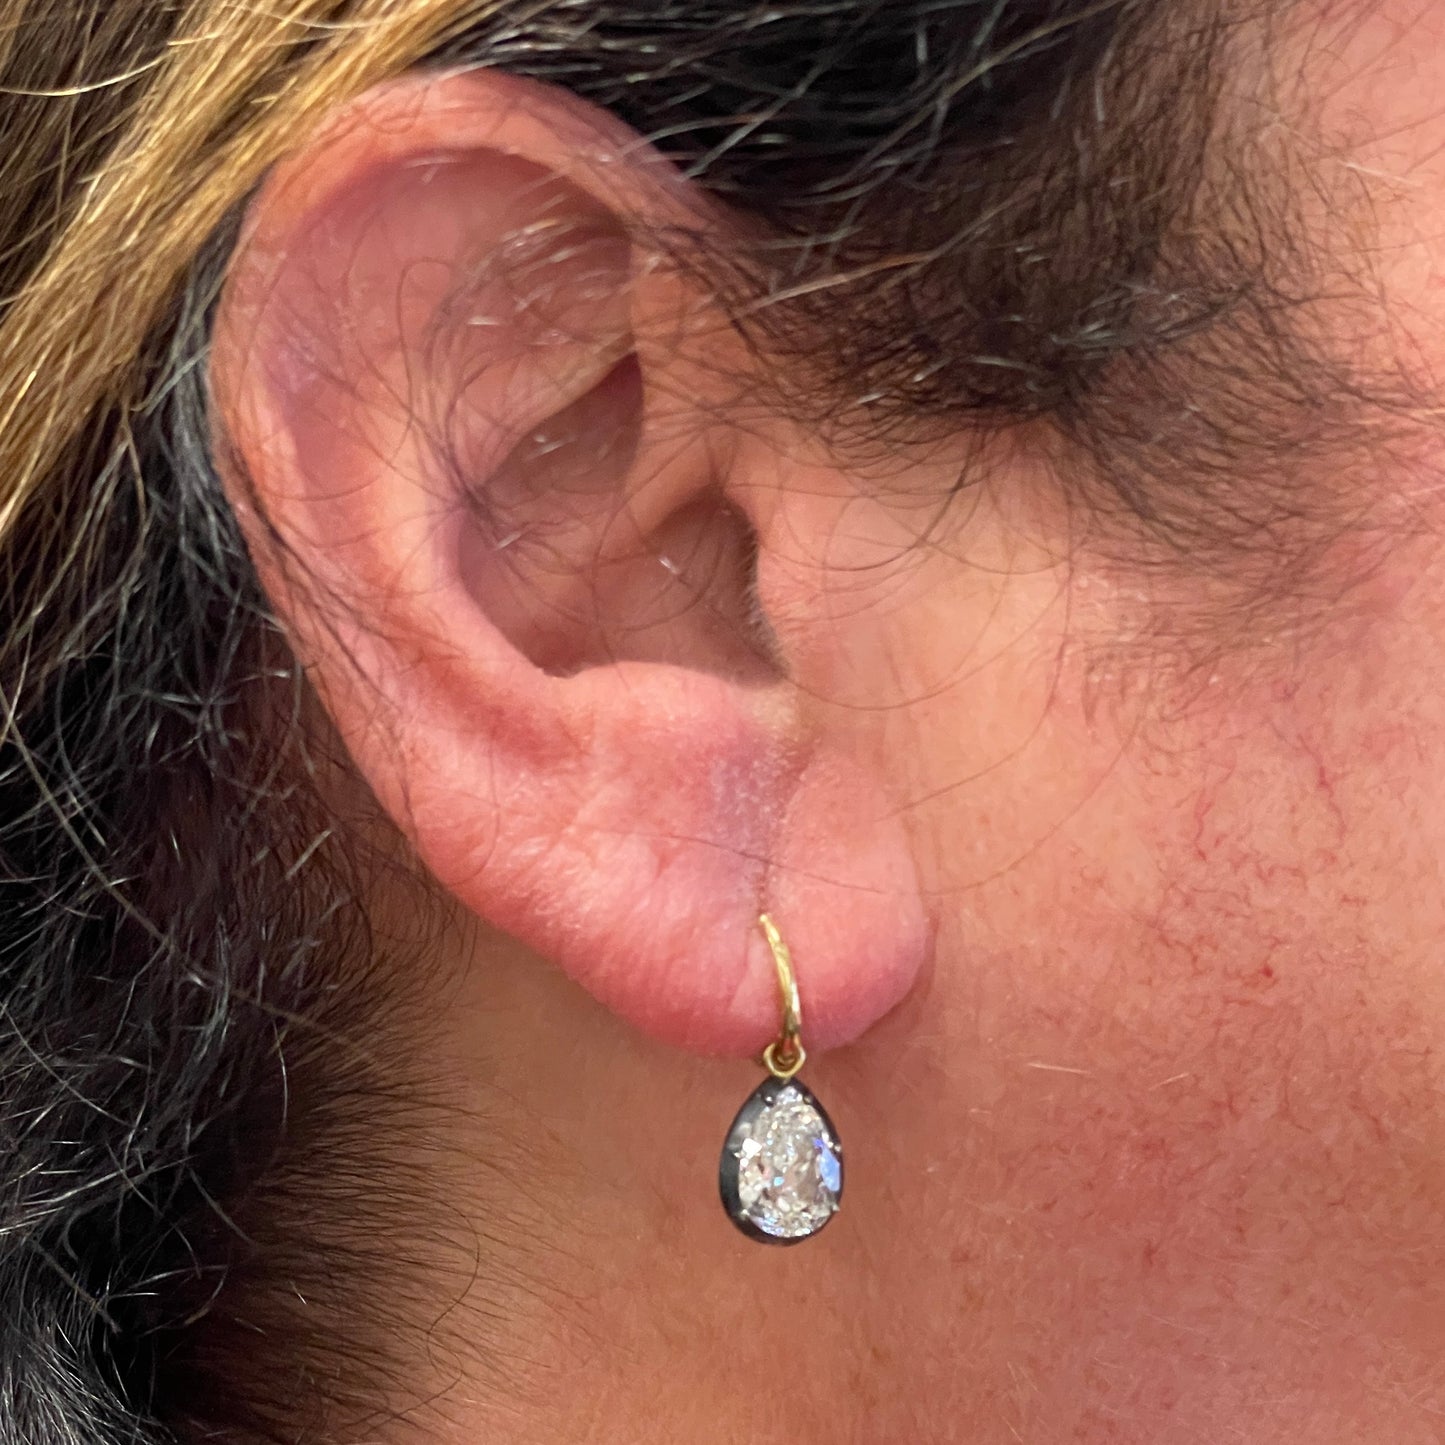 Post-1980s 18KT Blackened Gold Diamond Drop Earrings worn on ear